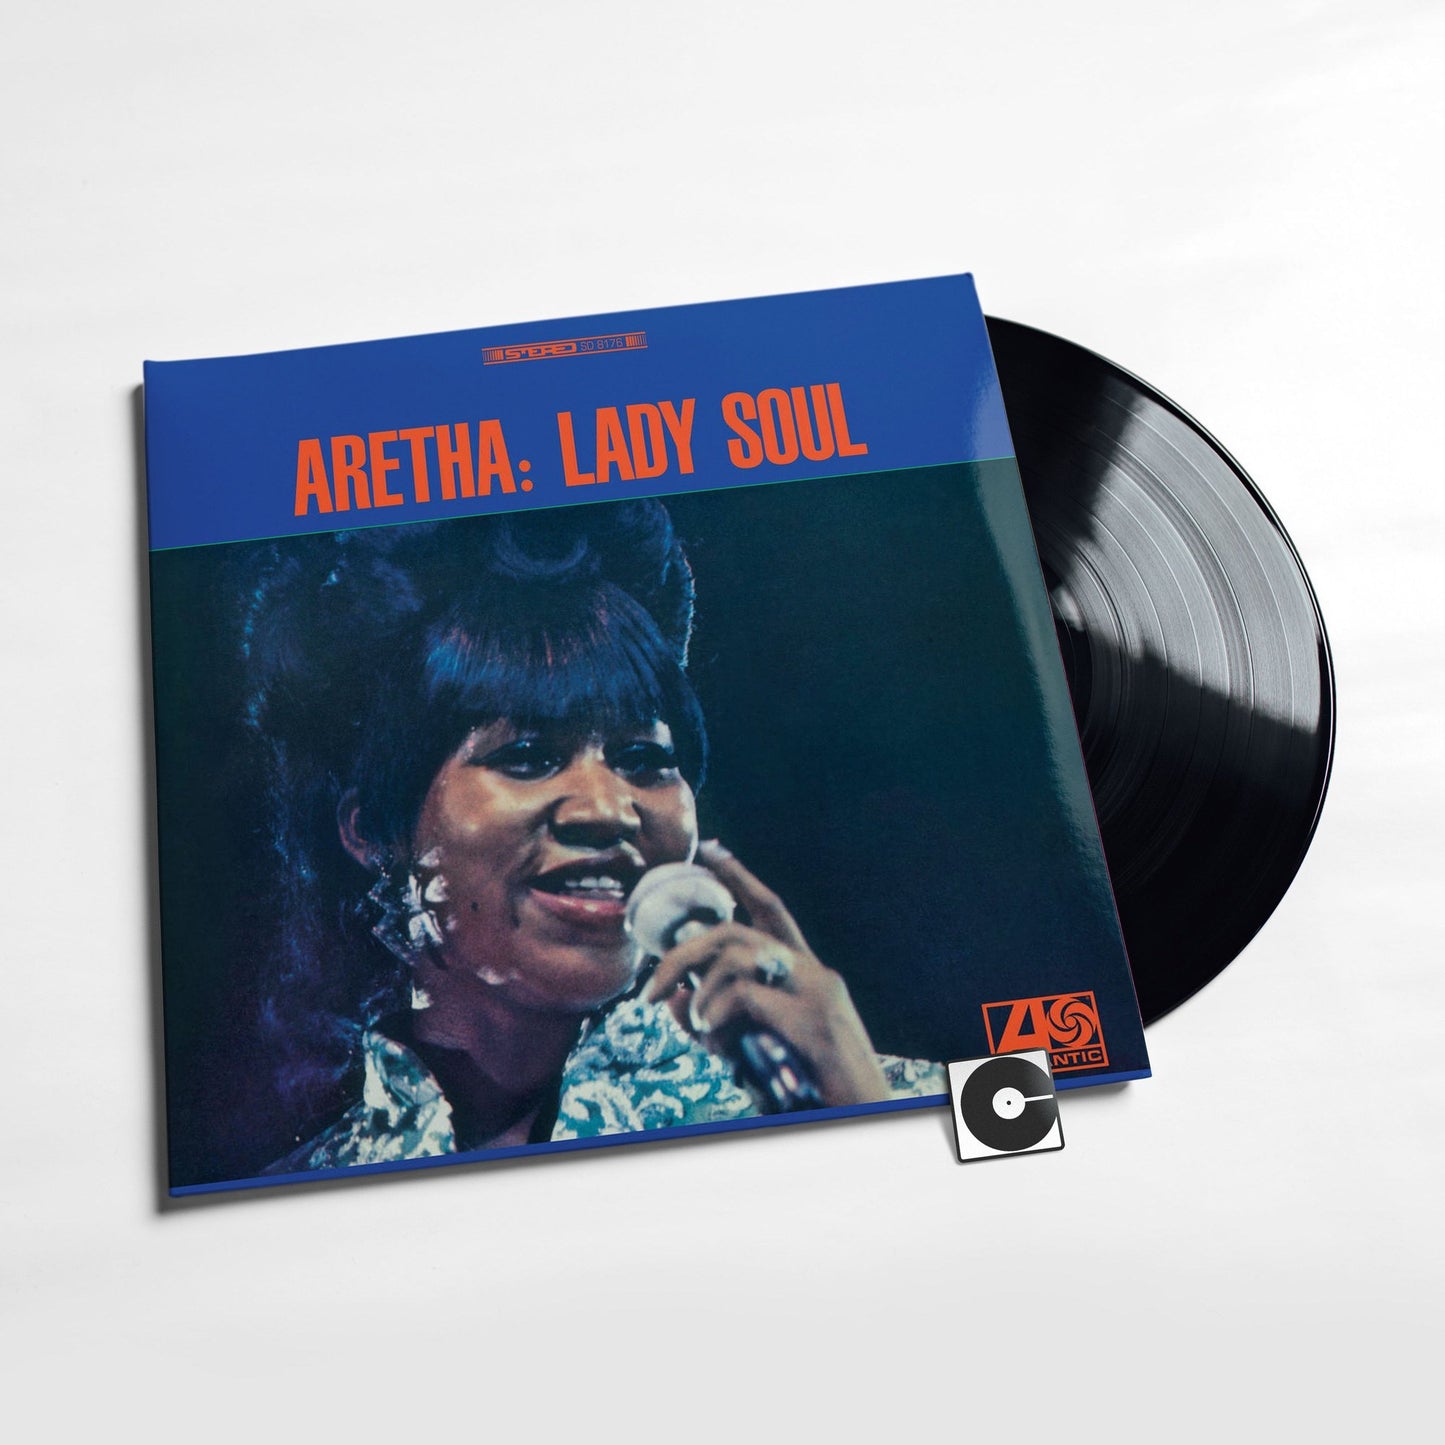 Aretha Franklin - "Lady Soul"